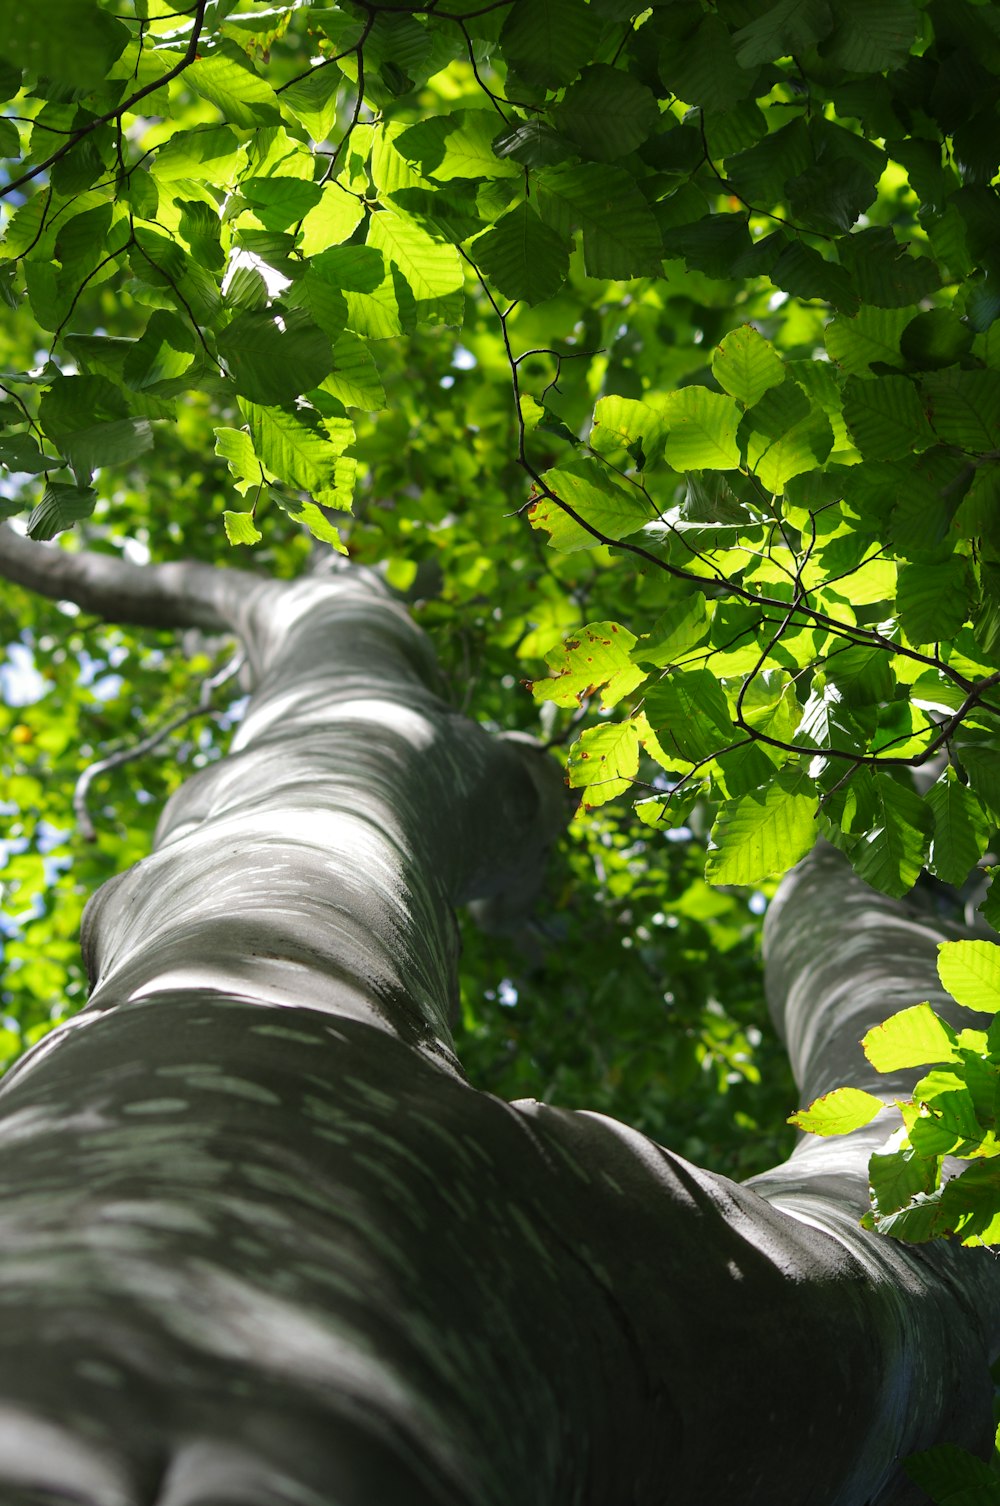 Un albero alto con molte foglie verdi